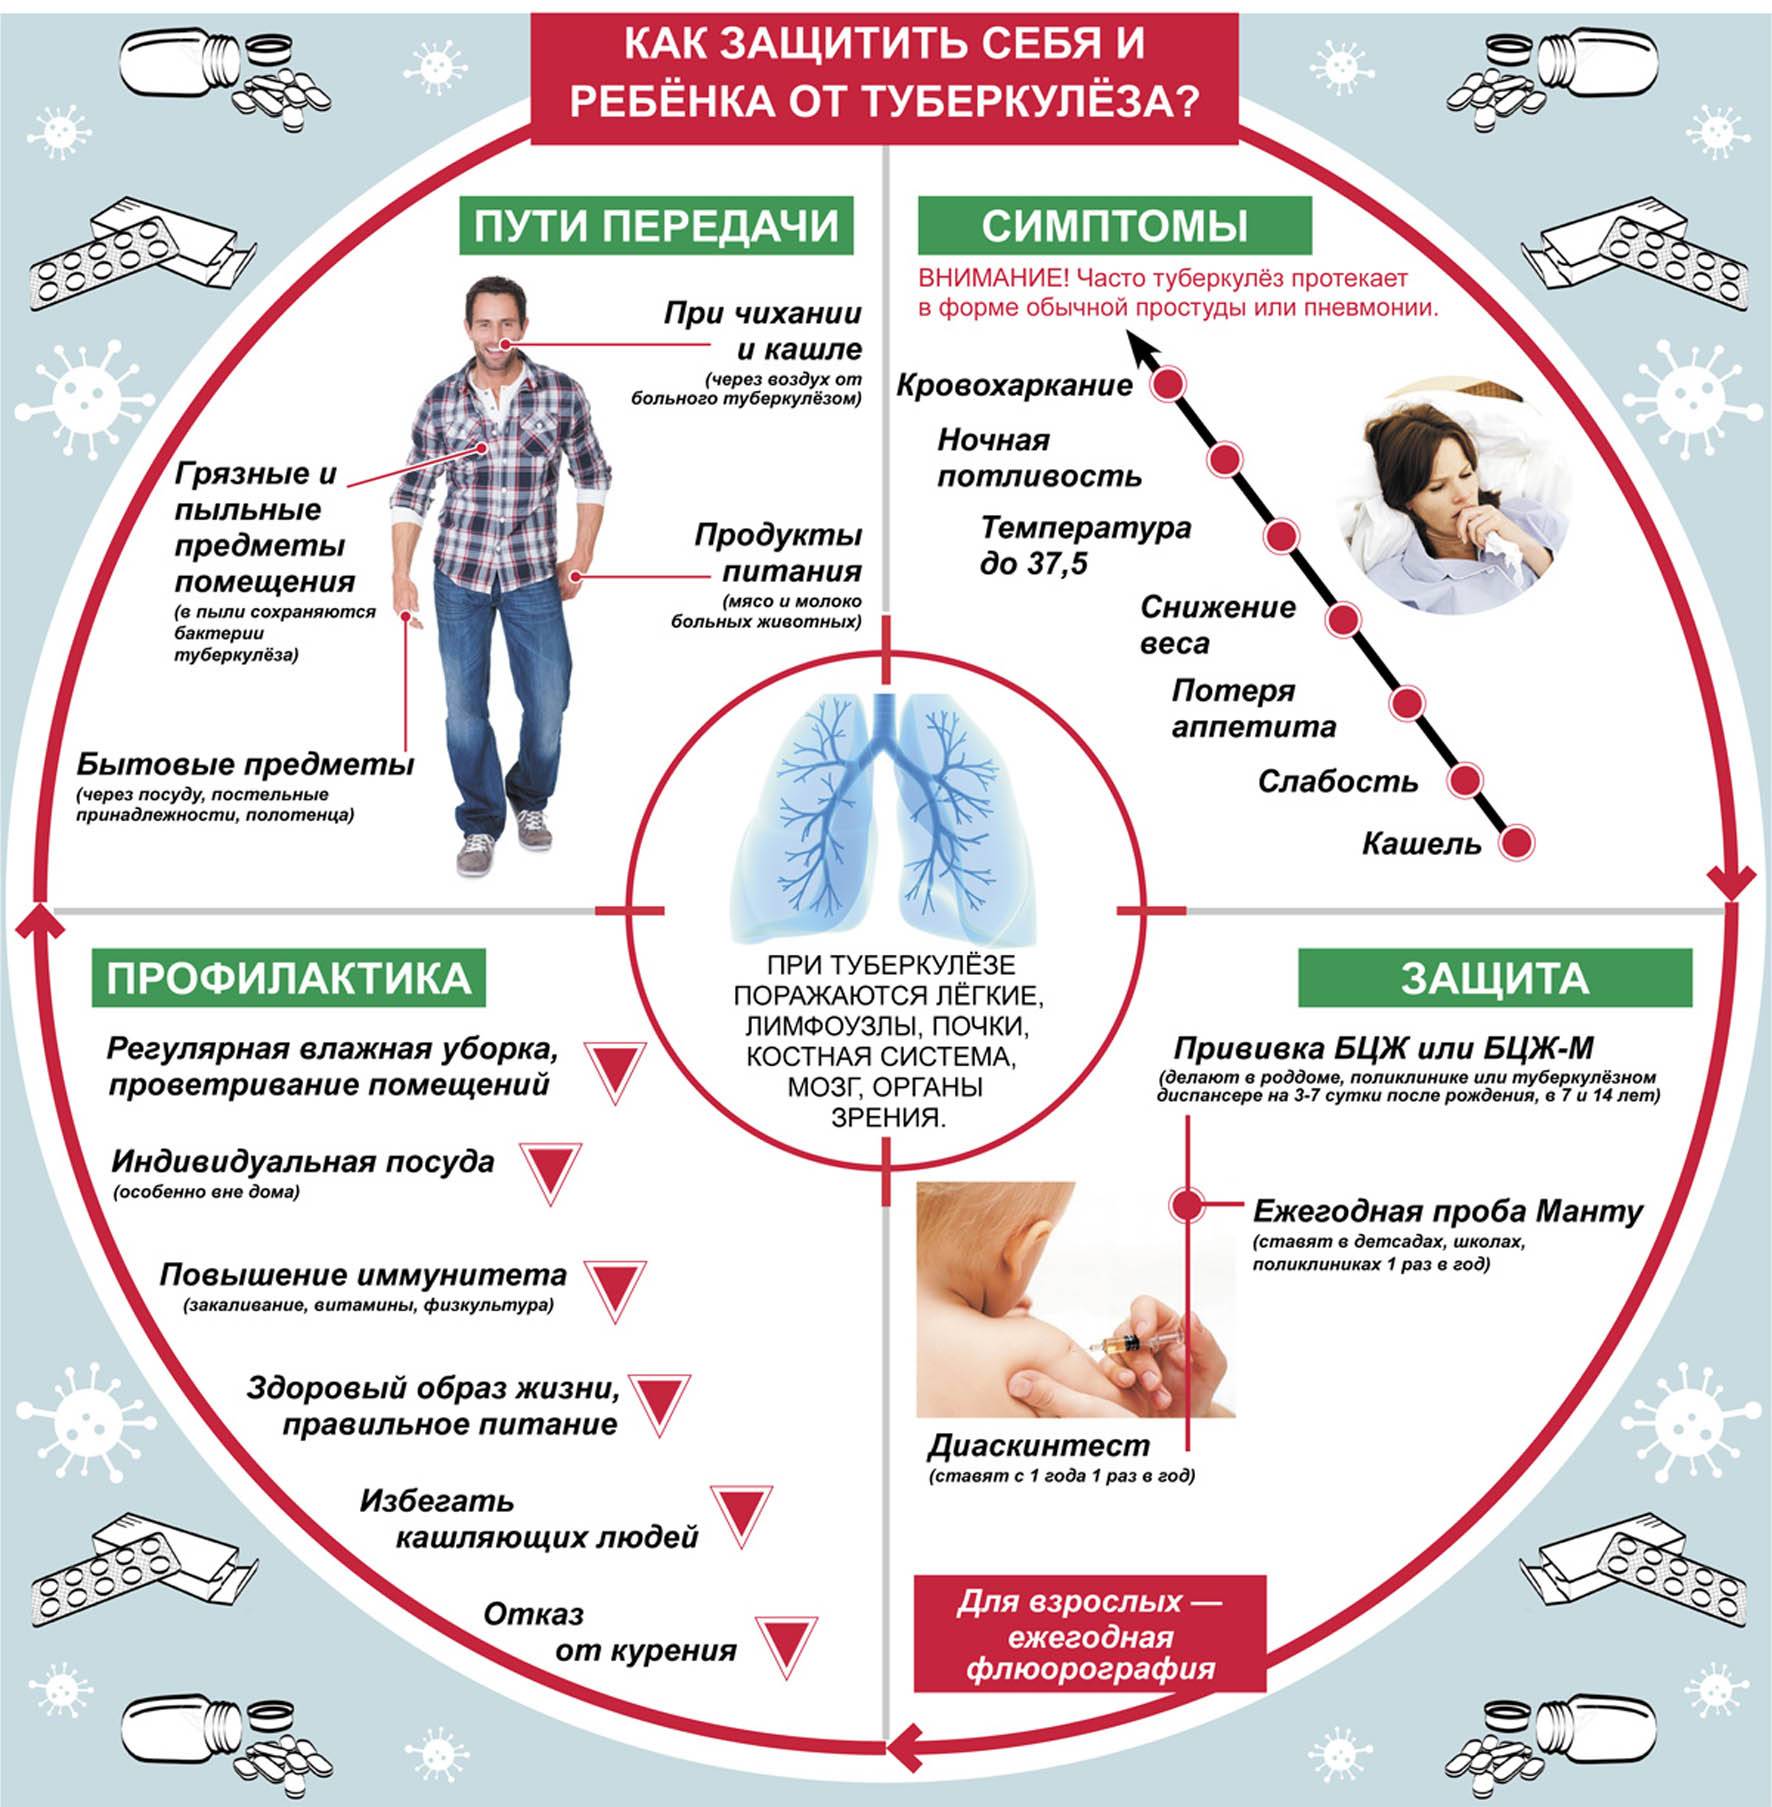 Признаки туберкулеза на ранних стадиях - первые симптомы легких у взрослых мужчин и женщин, проявление